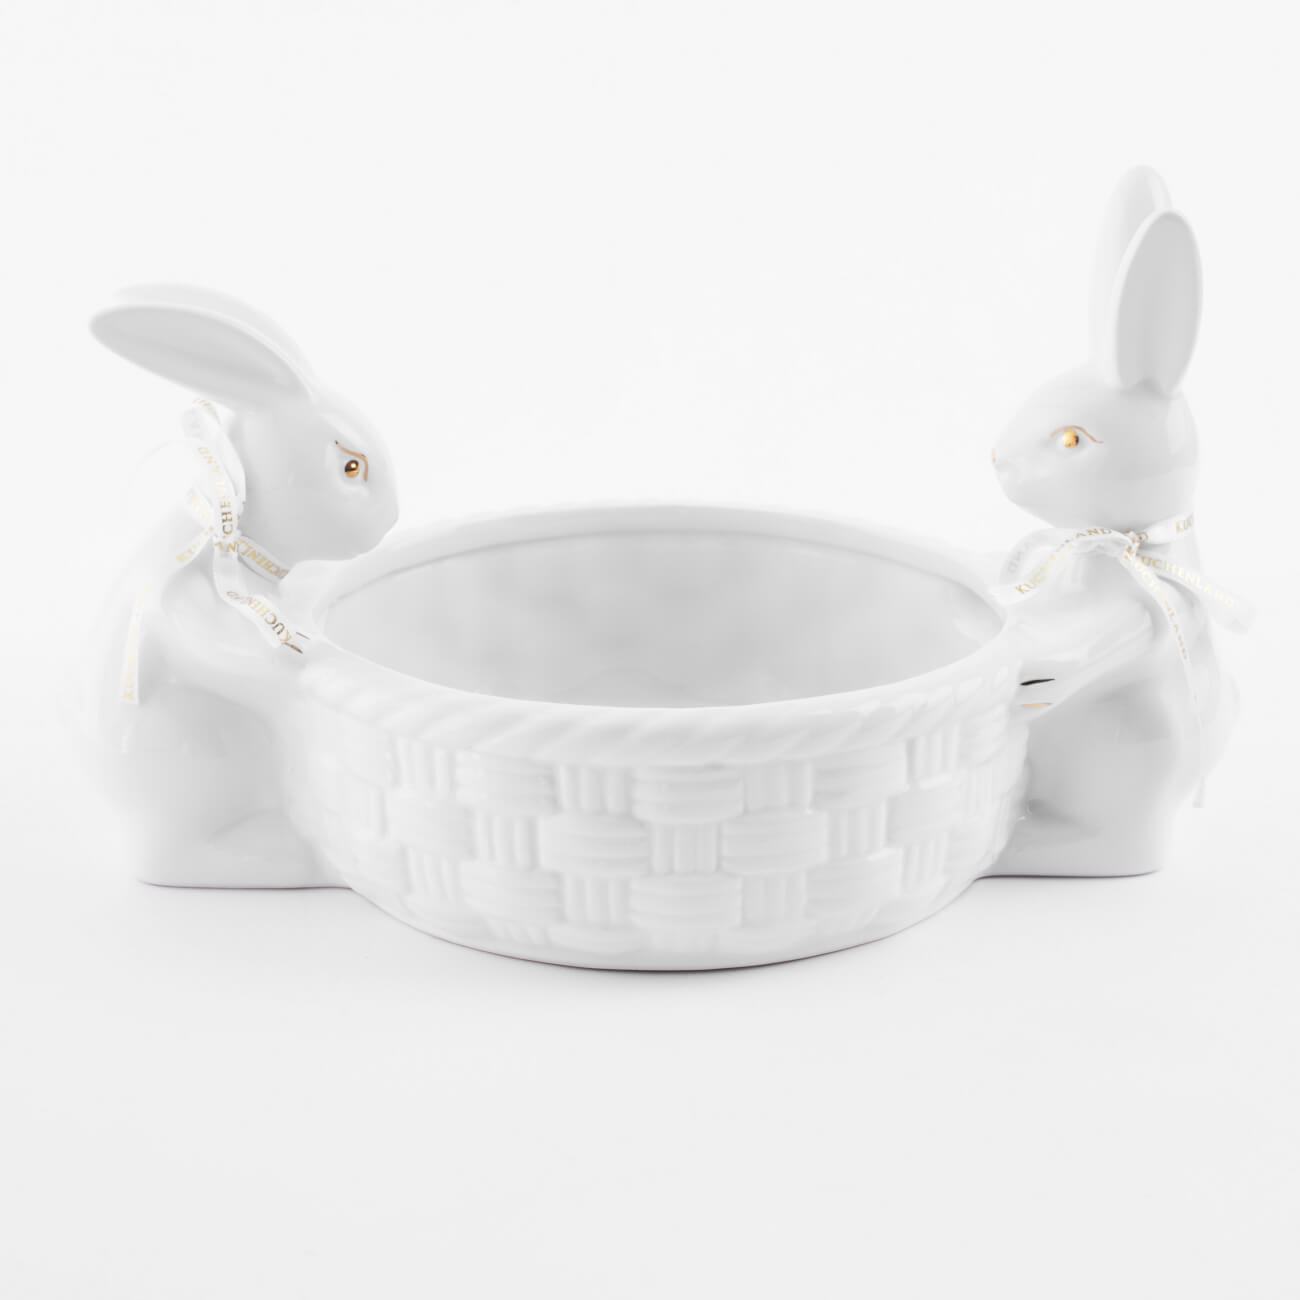 Конфетница, 28х16 см, керамика, бело-золотистая, Кролики с плетенной корзиной, Easter gold салфетка под приборы 30x45 см полиэстер прямоугольная белая кролики pure easter